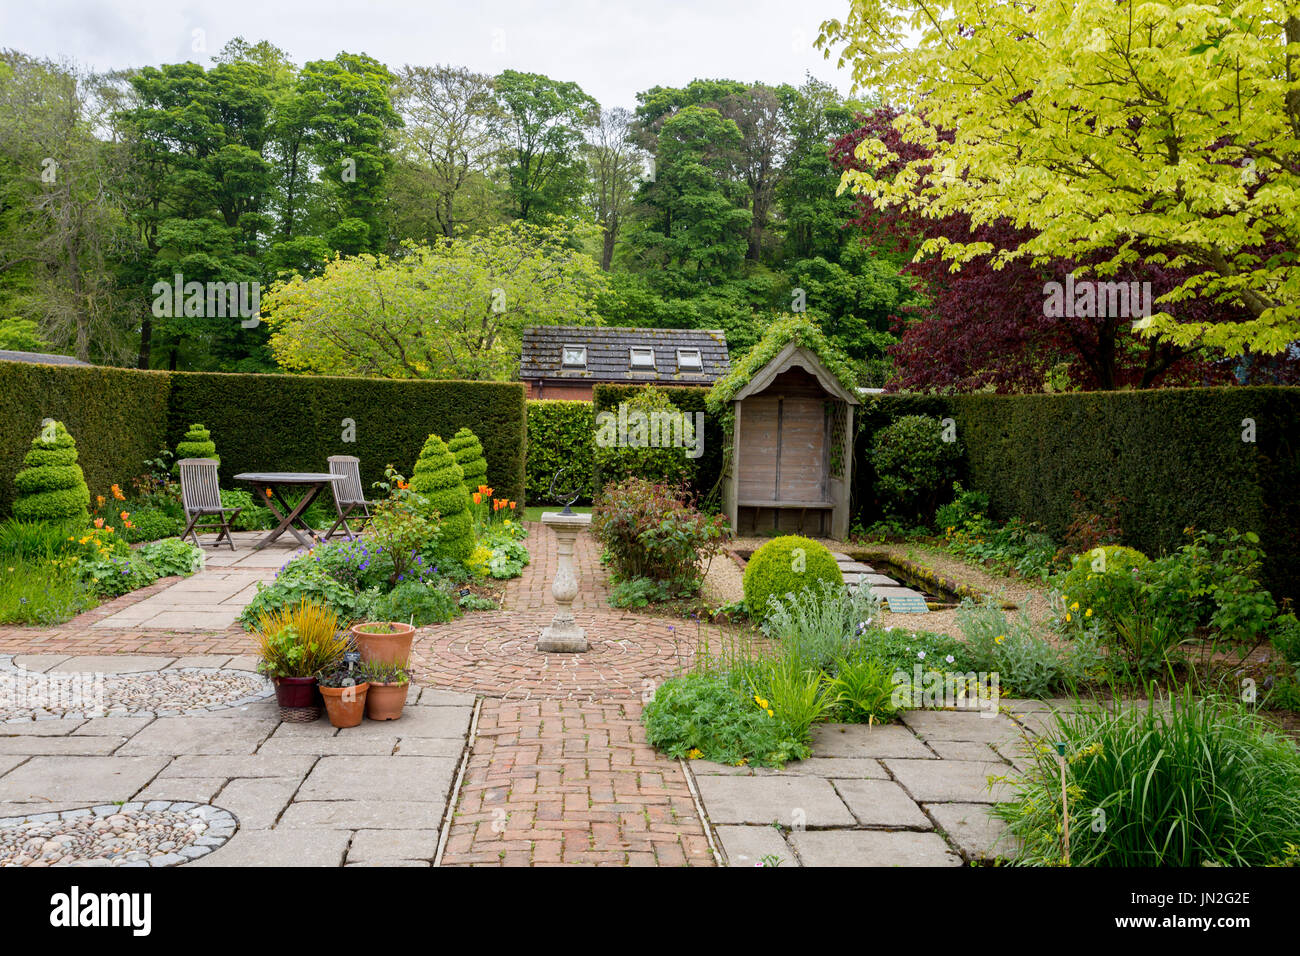 El patio del jardín en el Barnsdale jardines donde el difunto Geoff Hamilton filmó "jardineros World' para la BBC nr Oakham, Rutland, Inglaterra, Reino Unido. Foto de stock